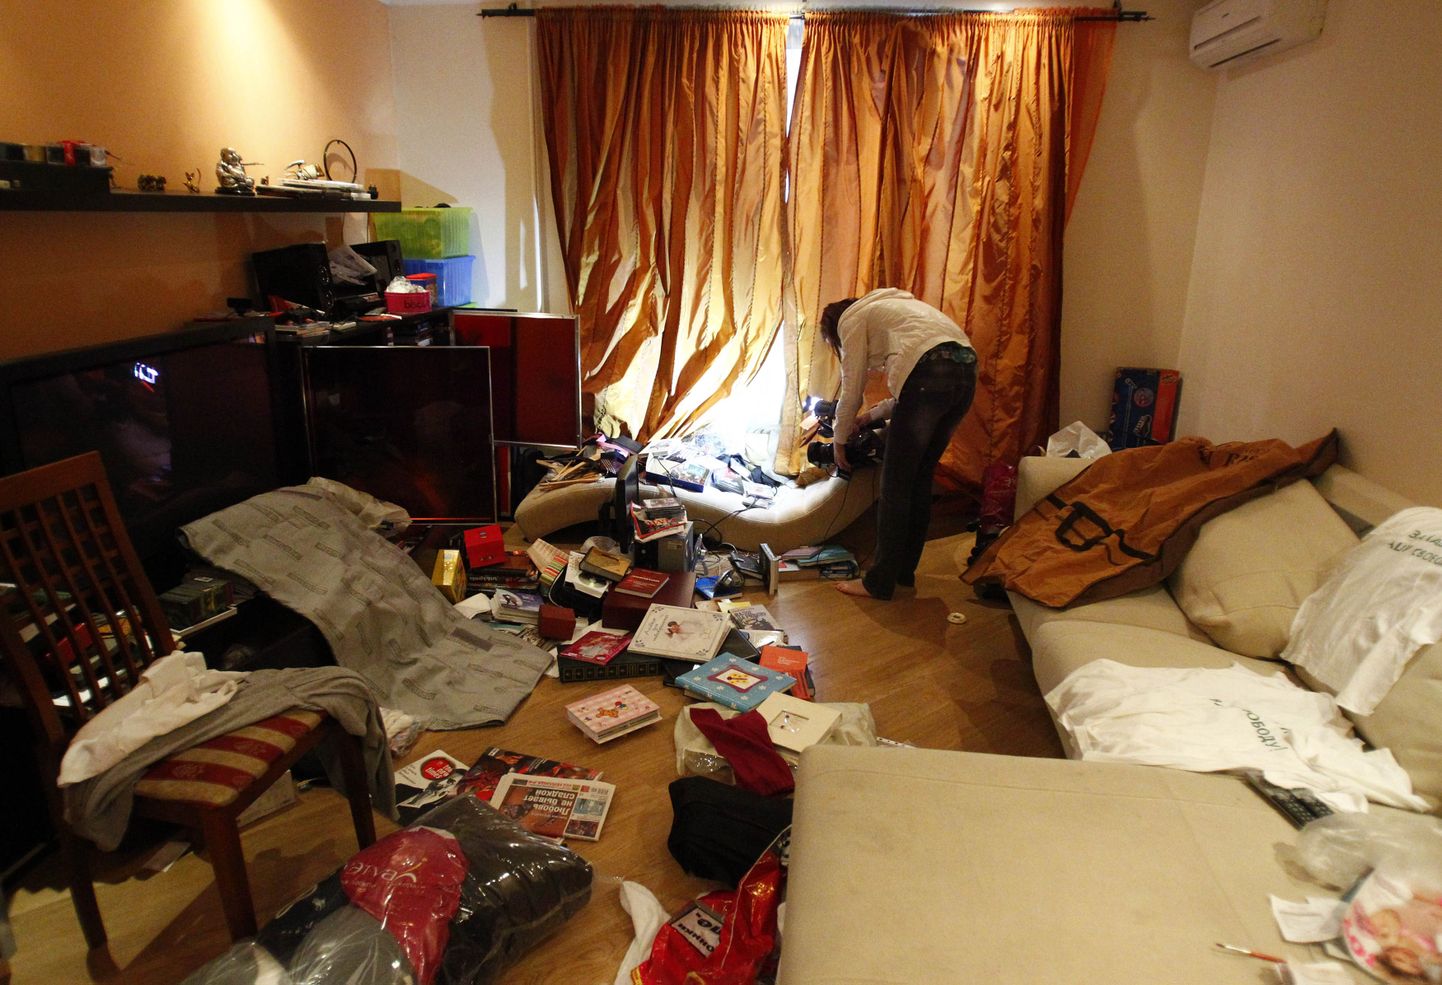 Квартира Навального после обыска в 2012 году. Фото иллюстративное.